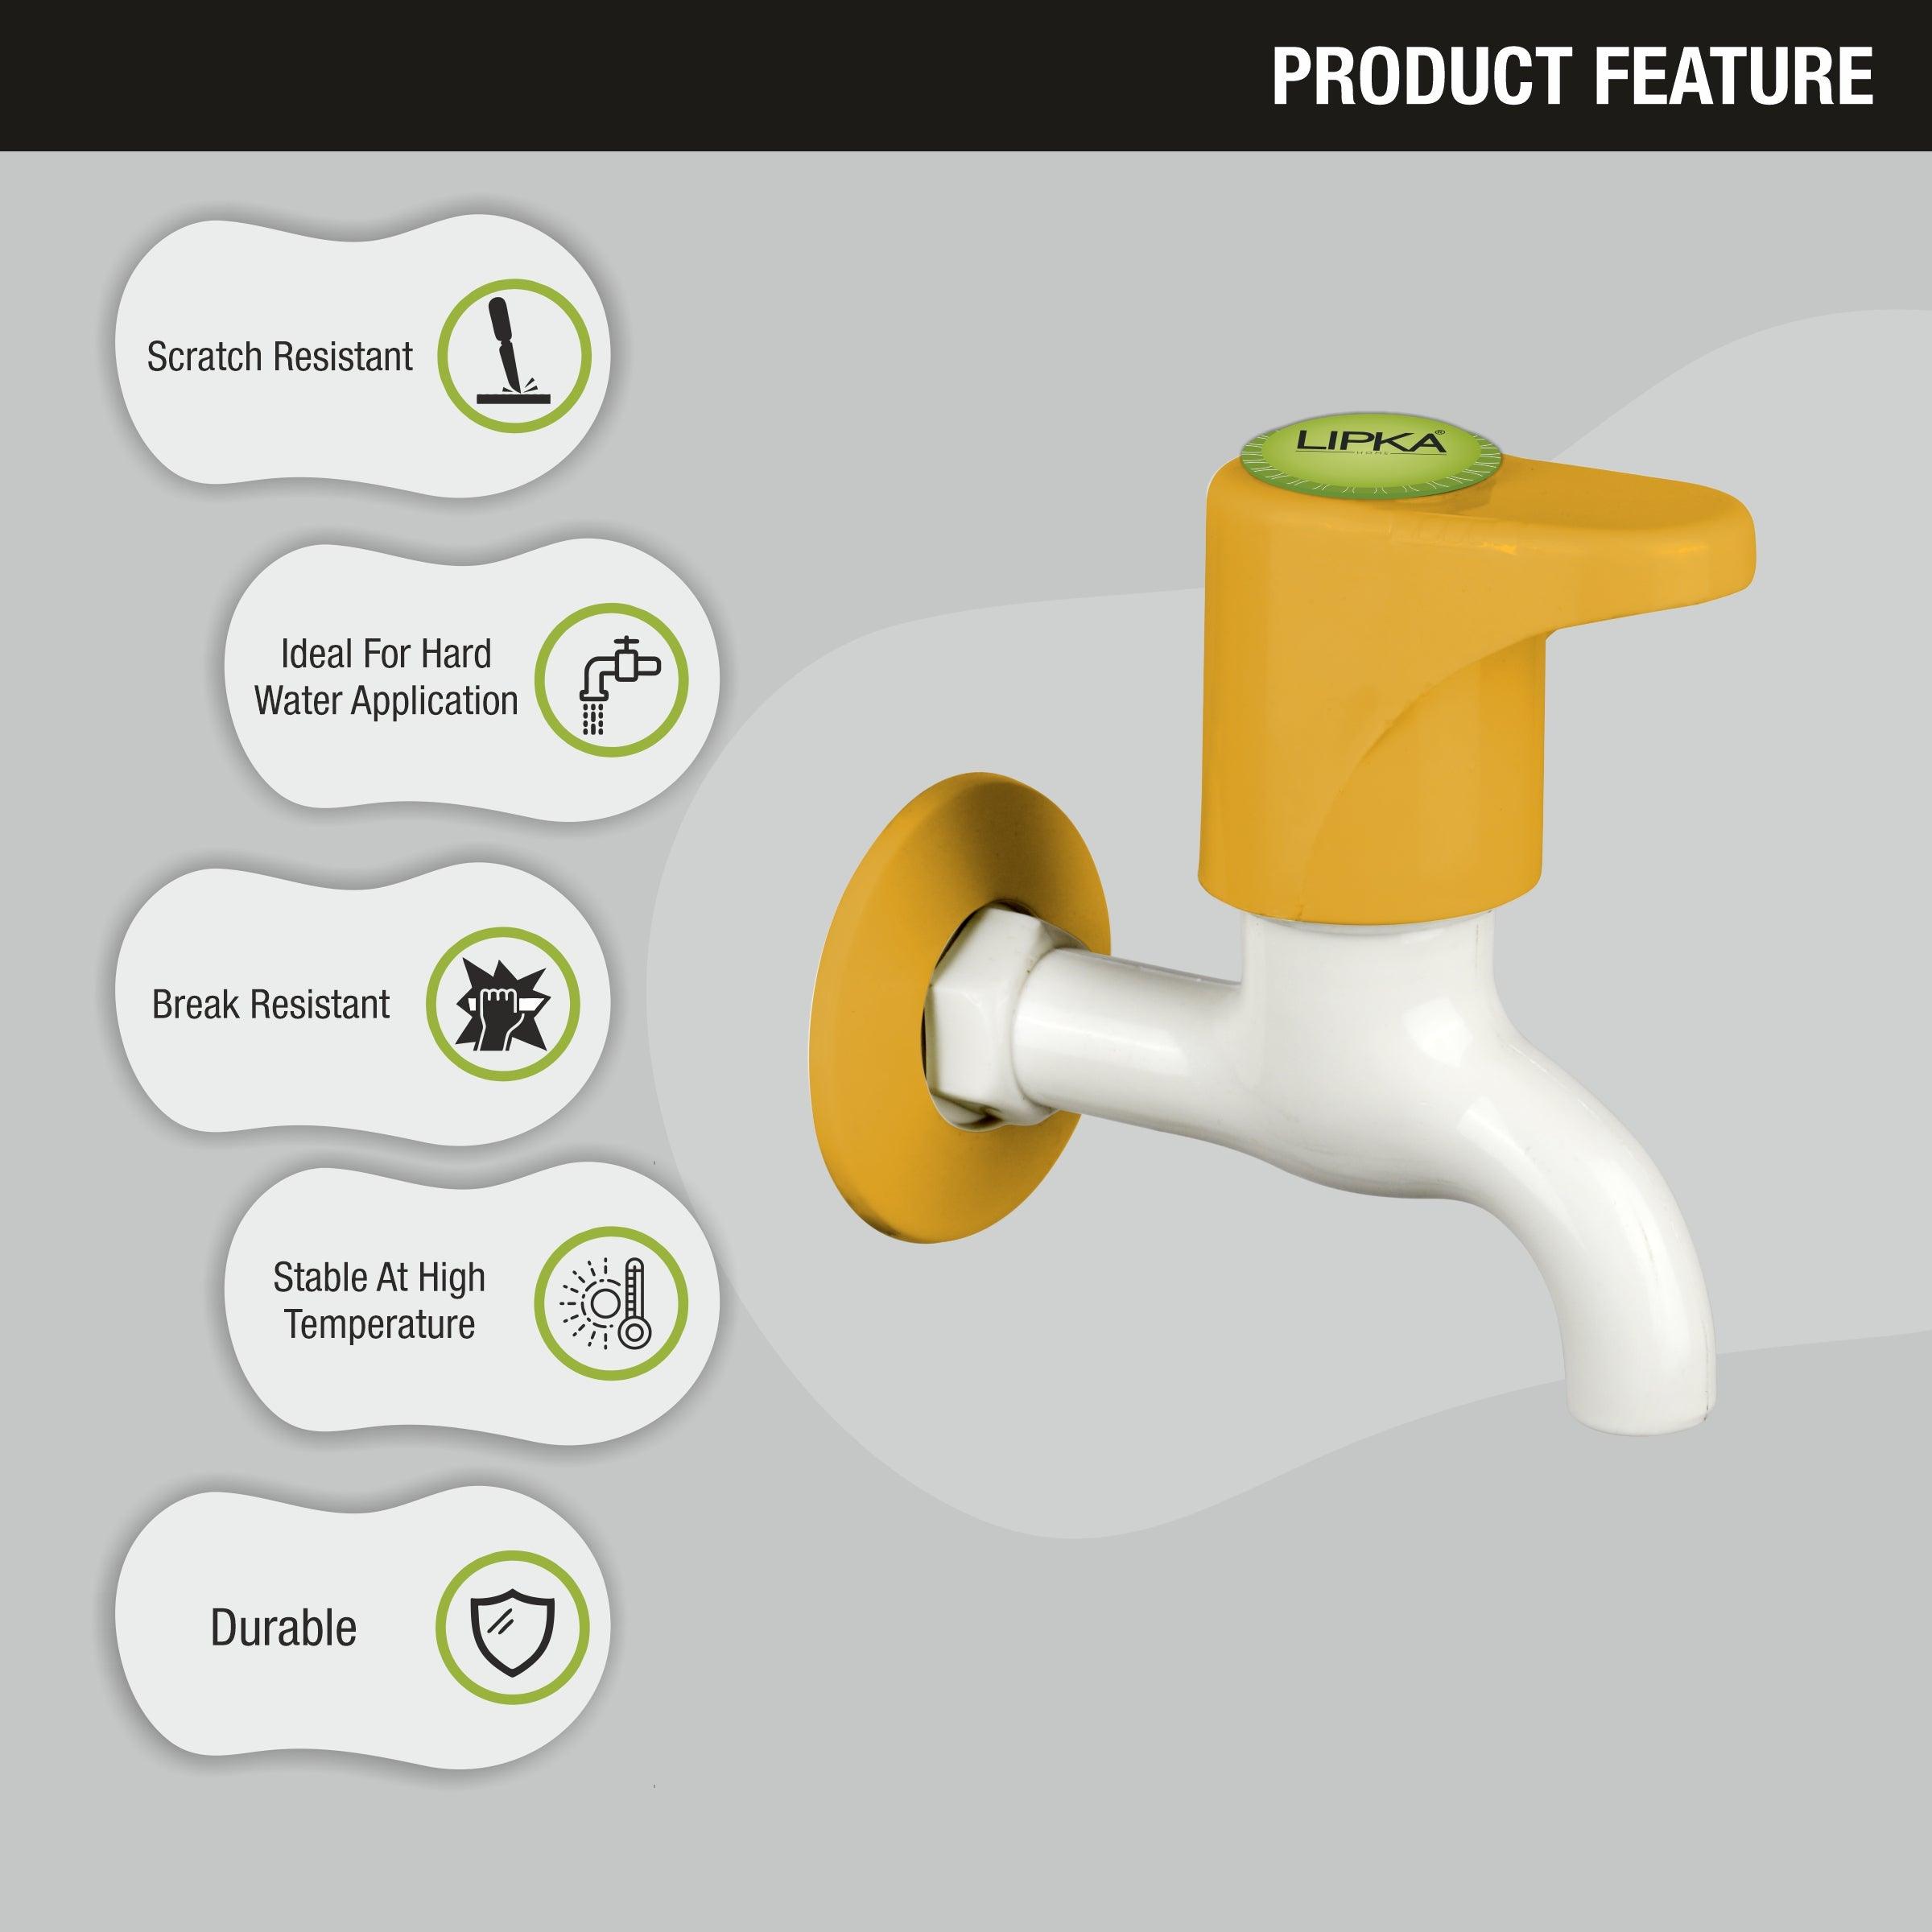 Sunflow Bib Tap PTMT Faucet features